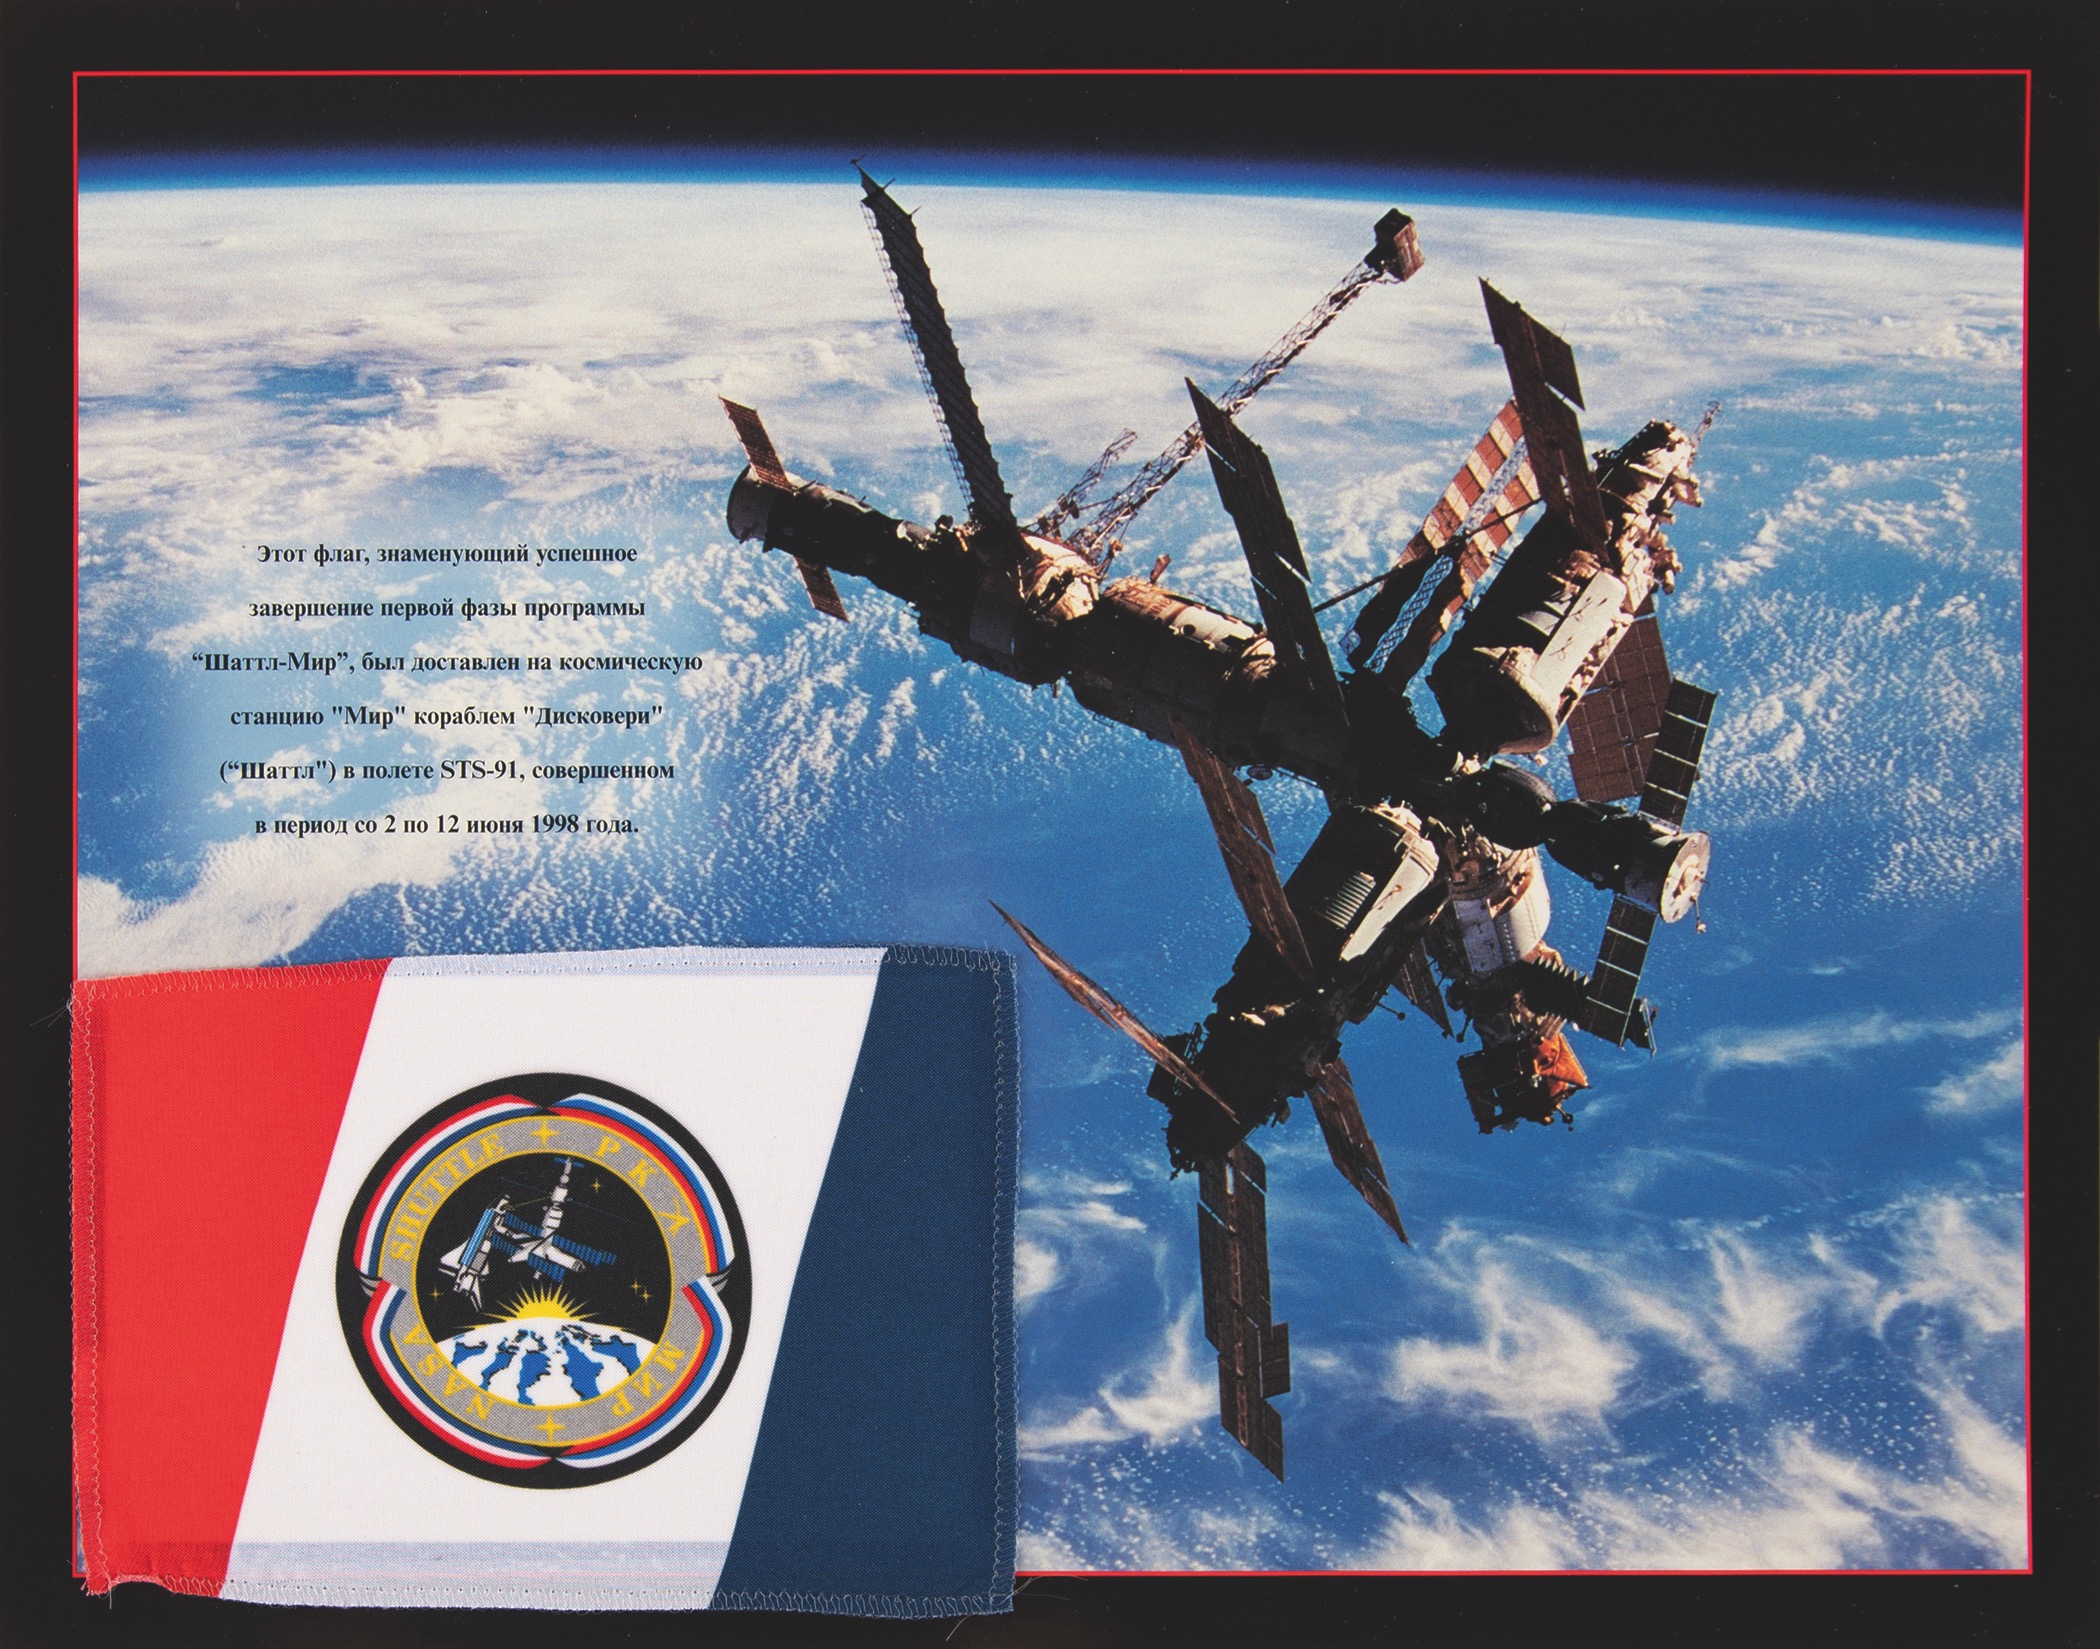 Lot #548 Shuttle-Mir Flown Flag - Image 1